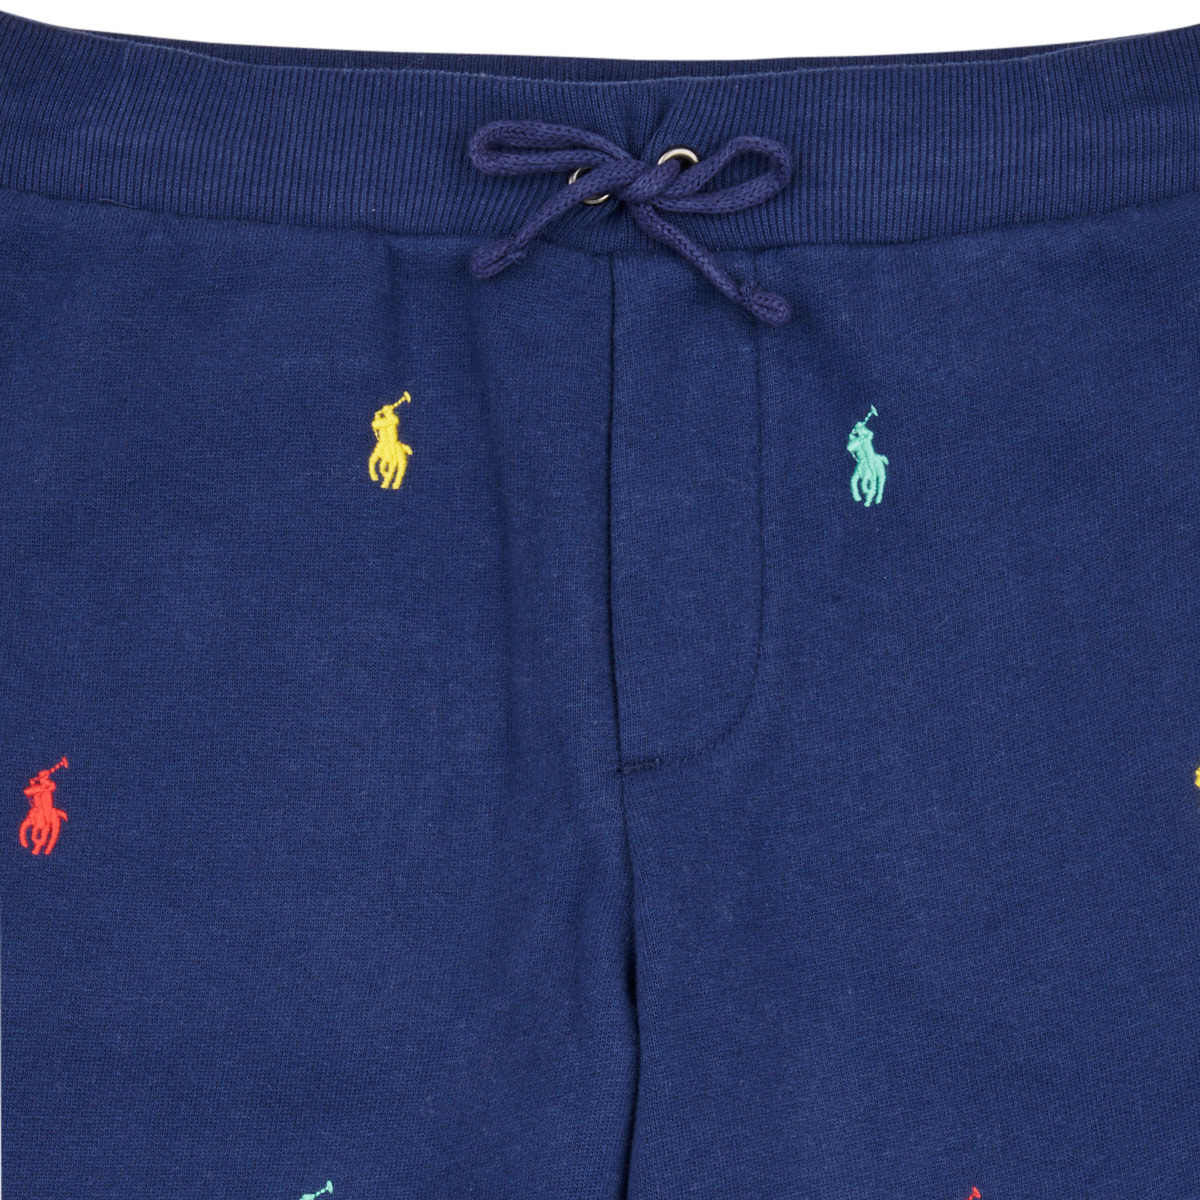 Polo Ralph Lauren Marine / Multicolore PO PANT-PANTS-ATHLETIC PX4jOsdg